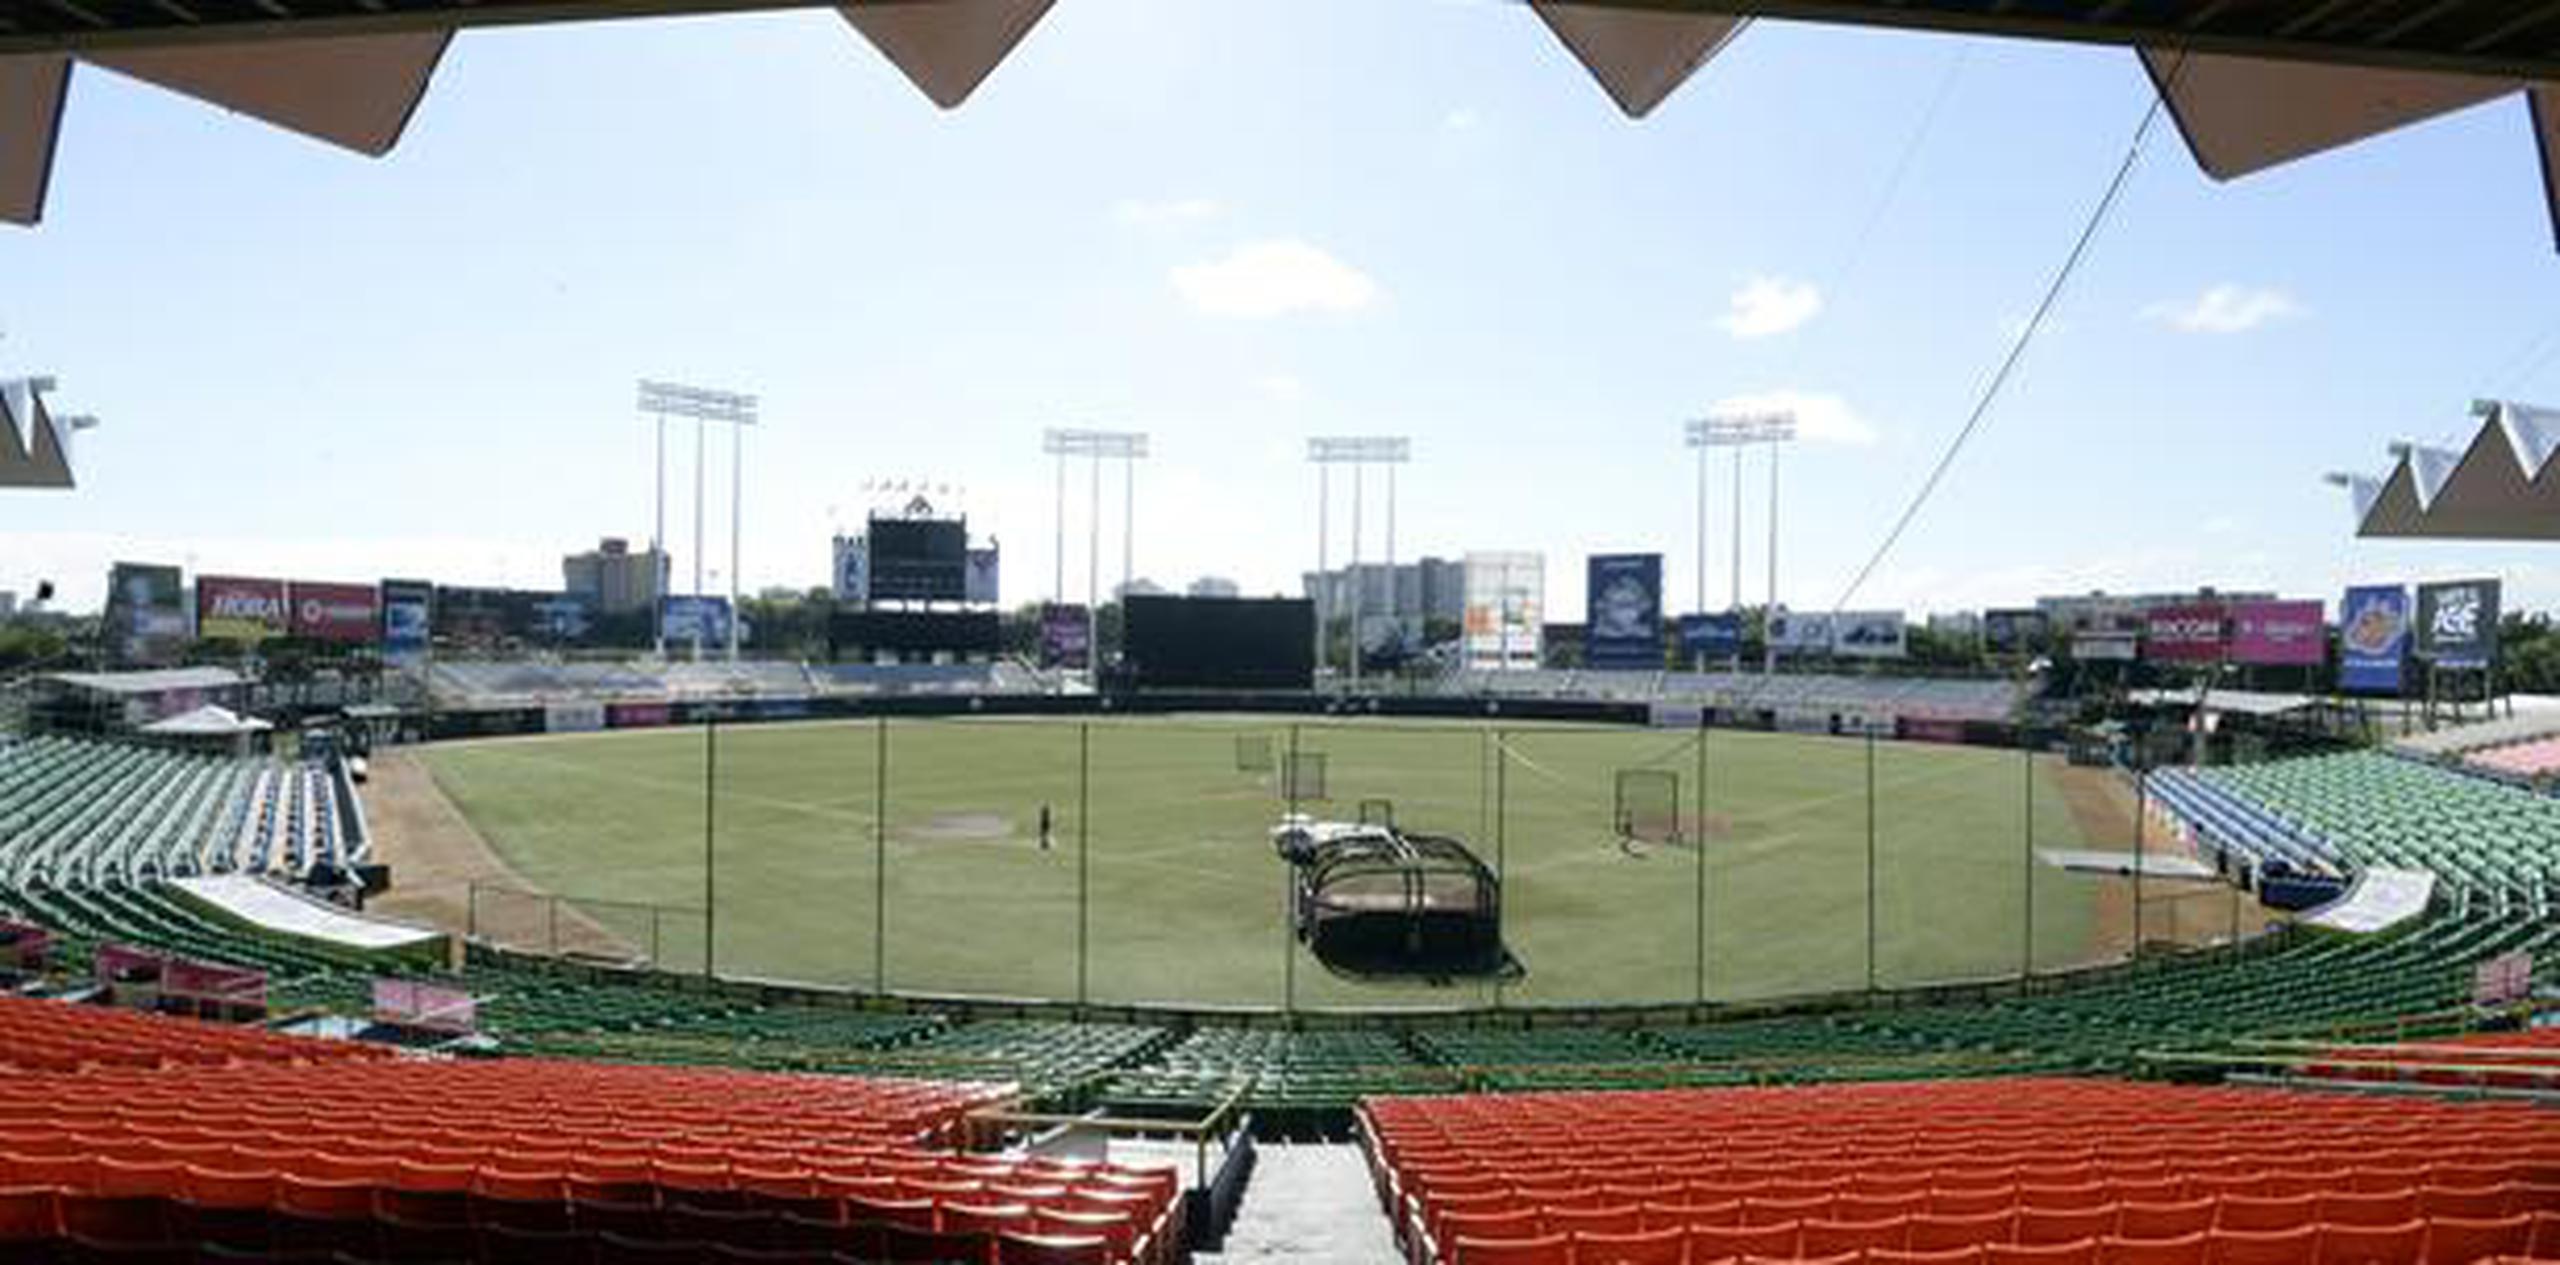 Las labores, que iniciarán el miércoles, consistirán en reemplazar la grama artificial por otra nueva y avalada por Major League Baseball (MLB). (Archivo)